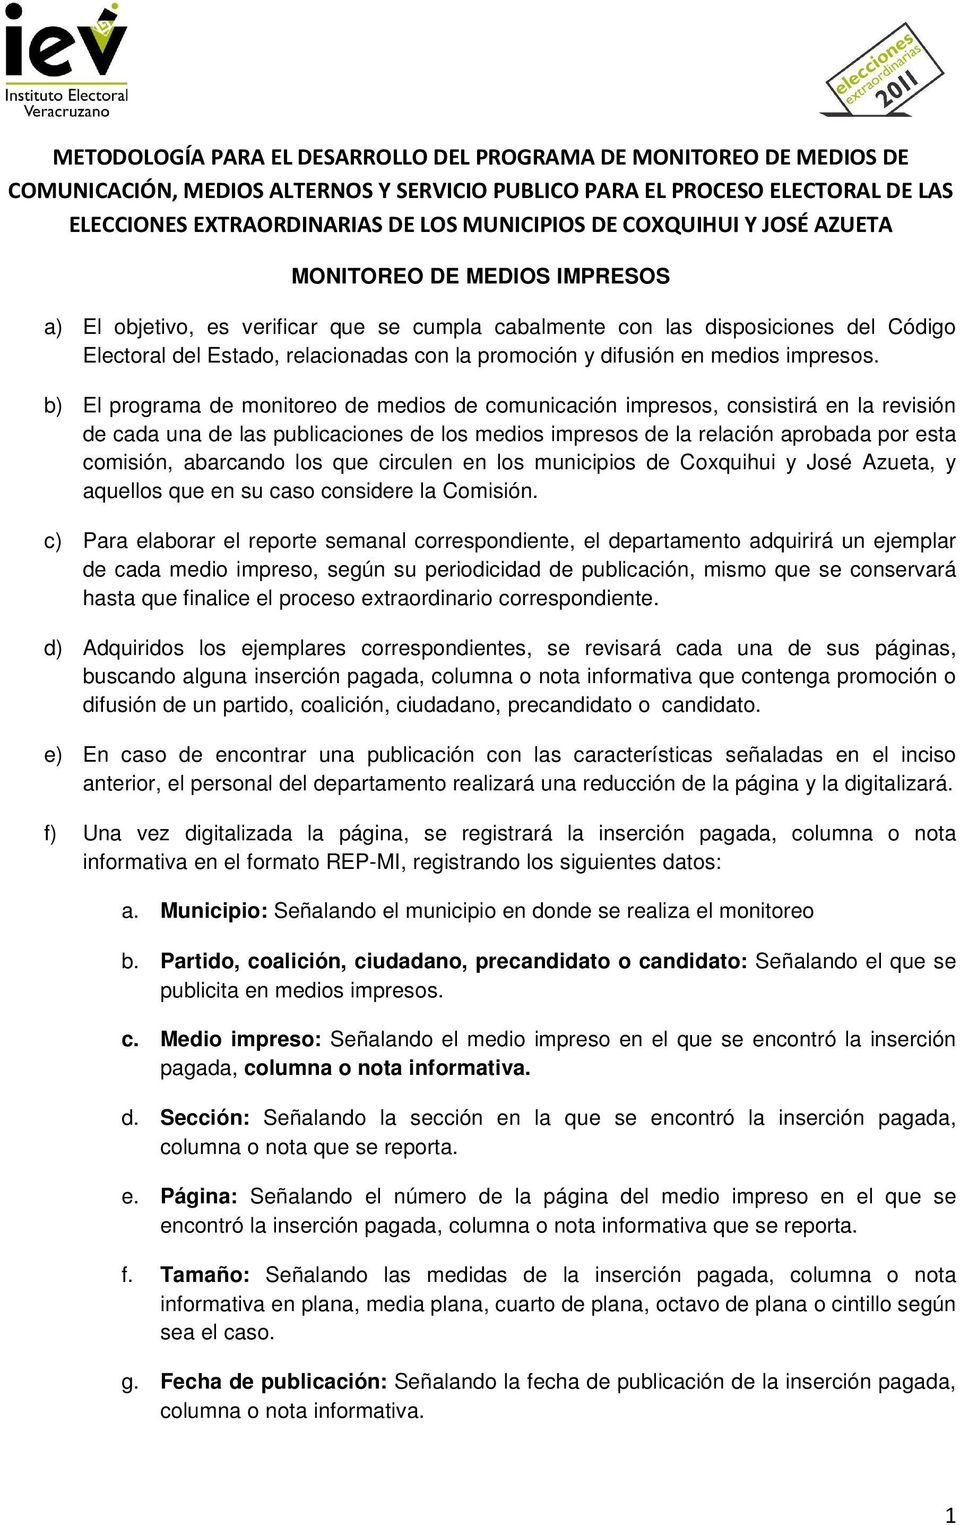 los que circulen en los municipios de Coxquihui y José Azueta, y aquellos que en su caso considere la Comisión.